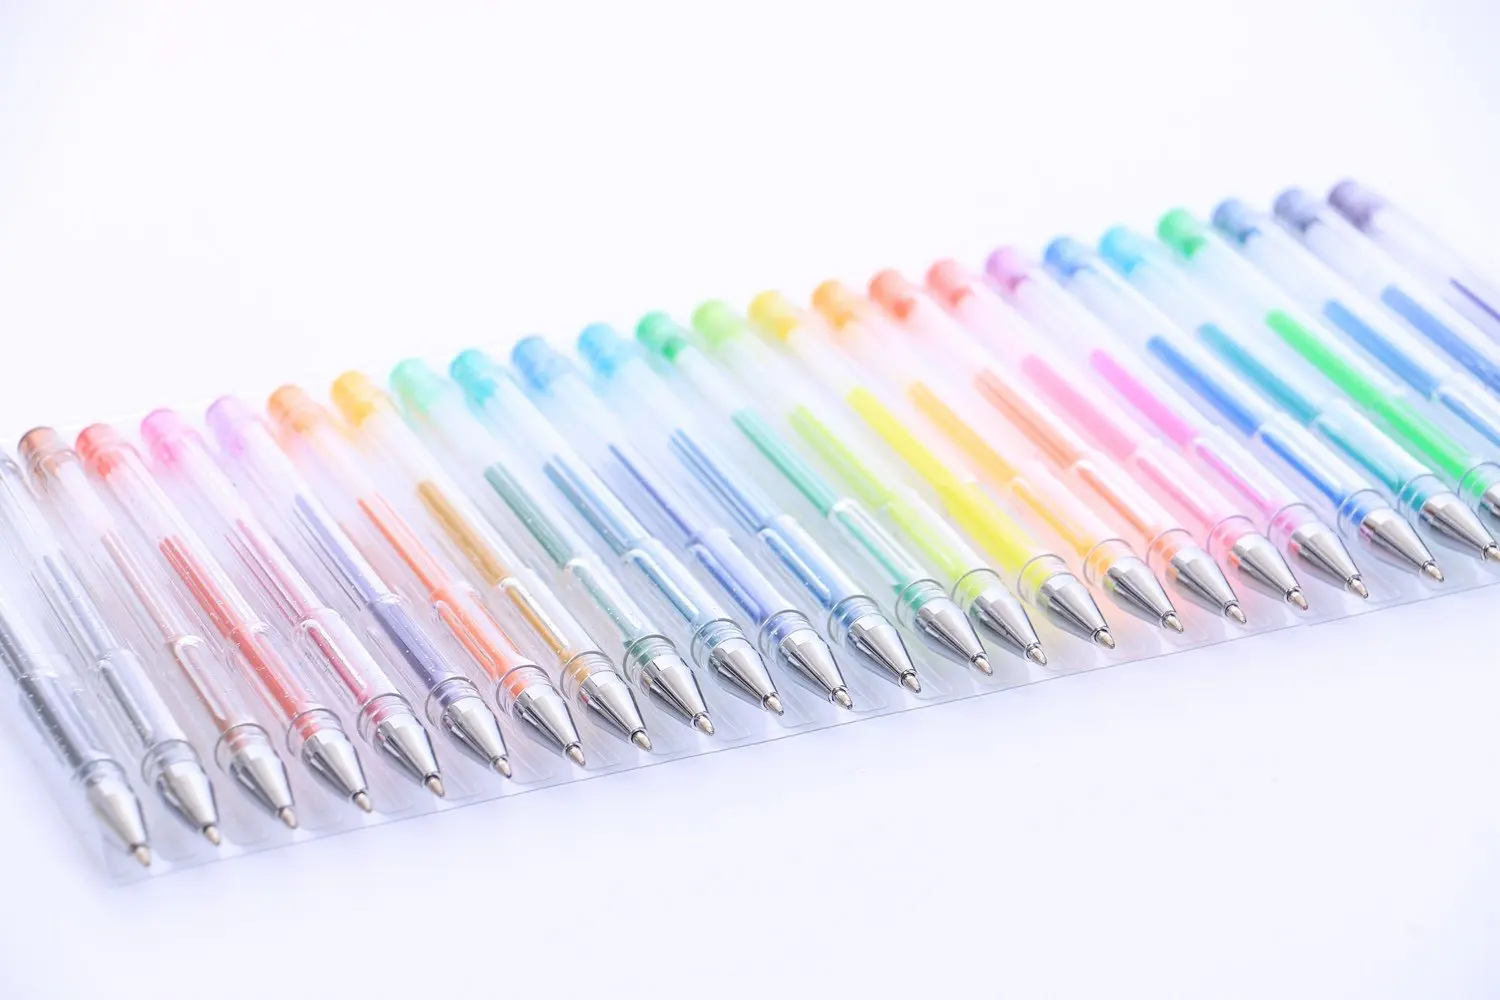 Shuttle Art 120 Unique Colors (No Duplicates) Gel Pens Gel Pen Set for Adult  Coloring Books